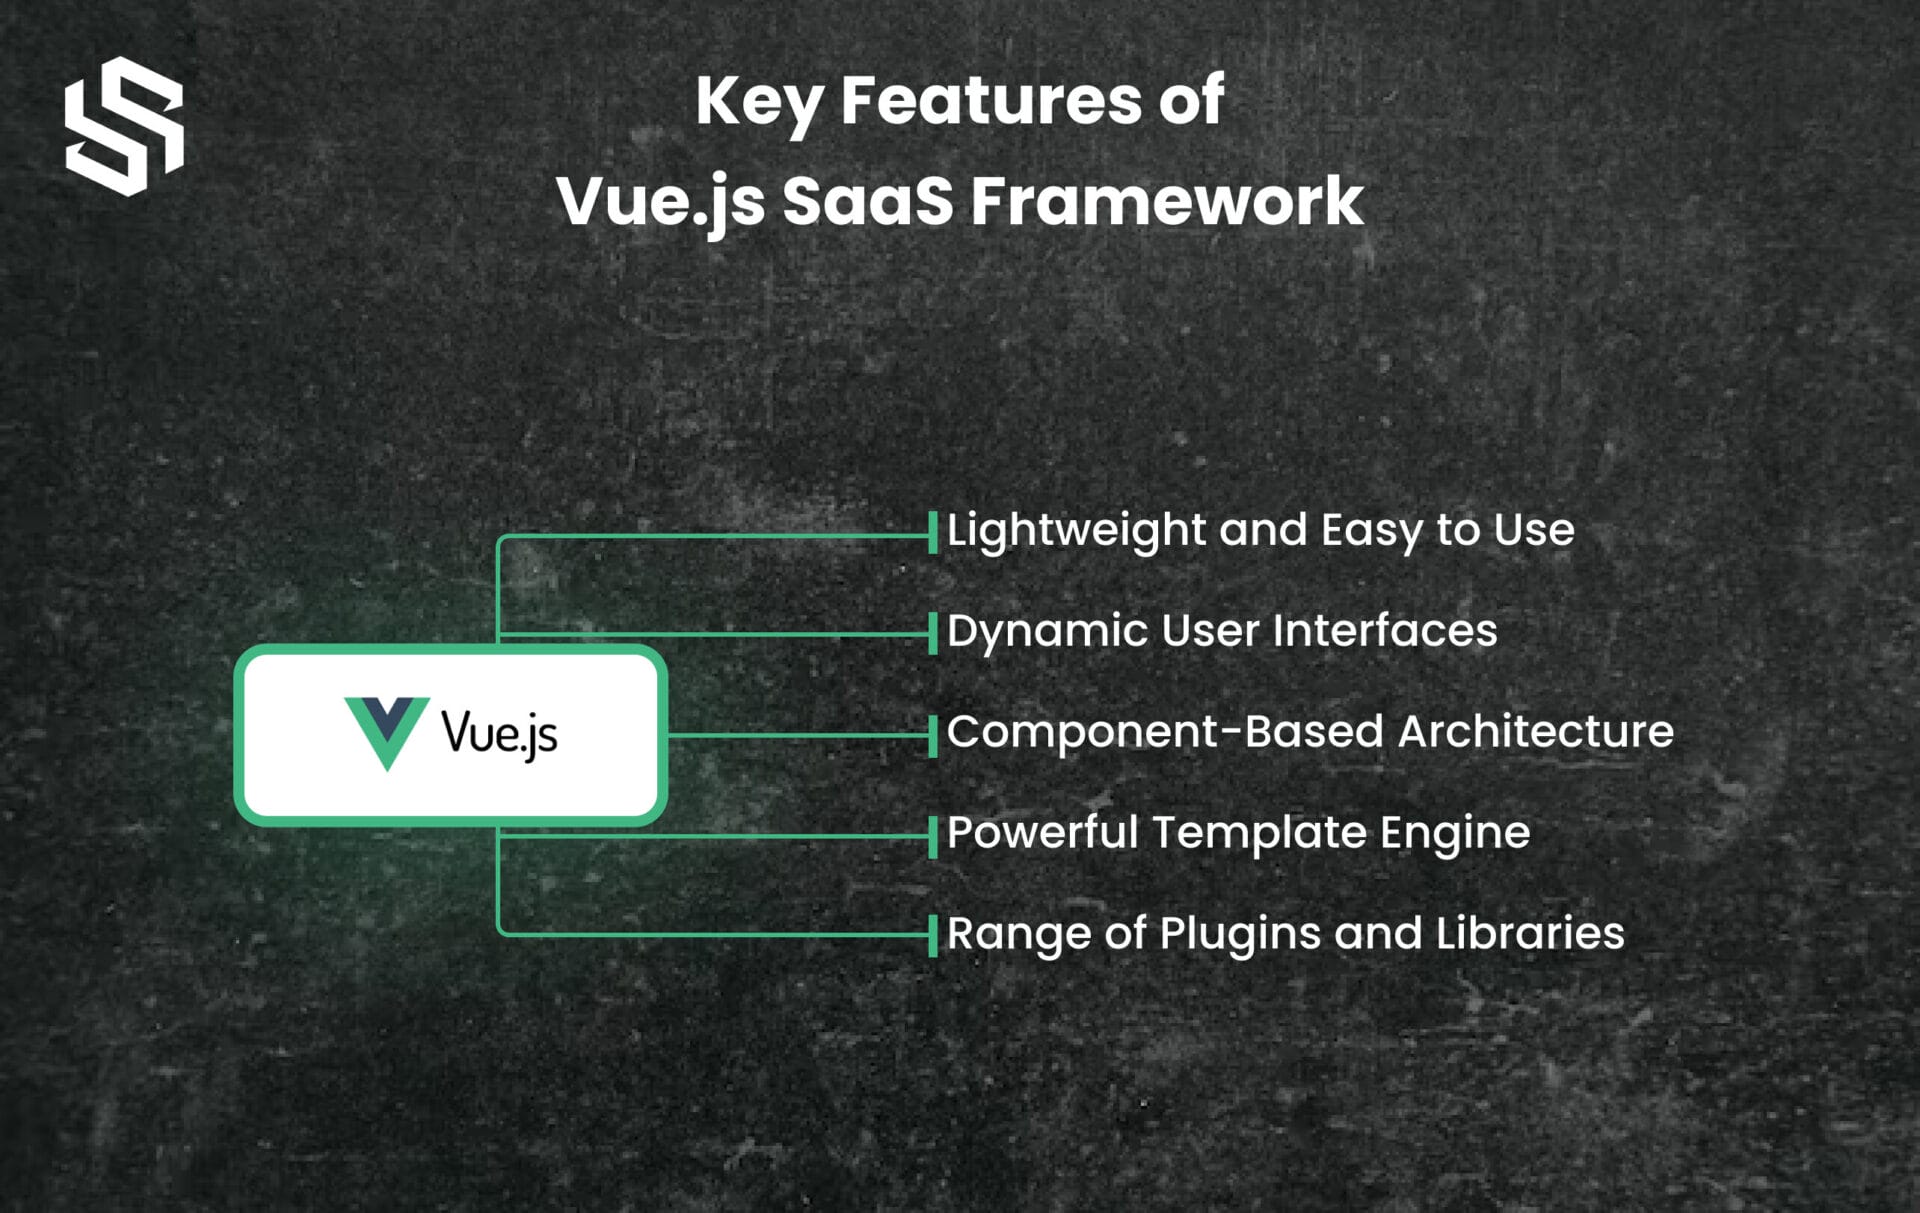 Key Features of Vue.js Framework